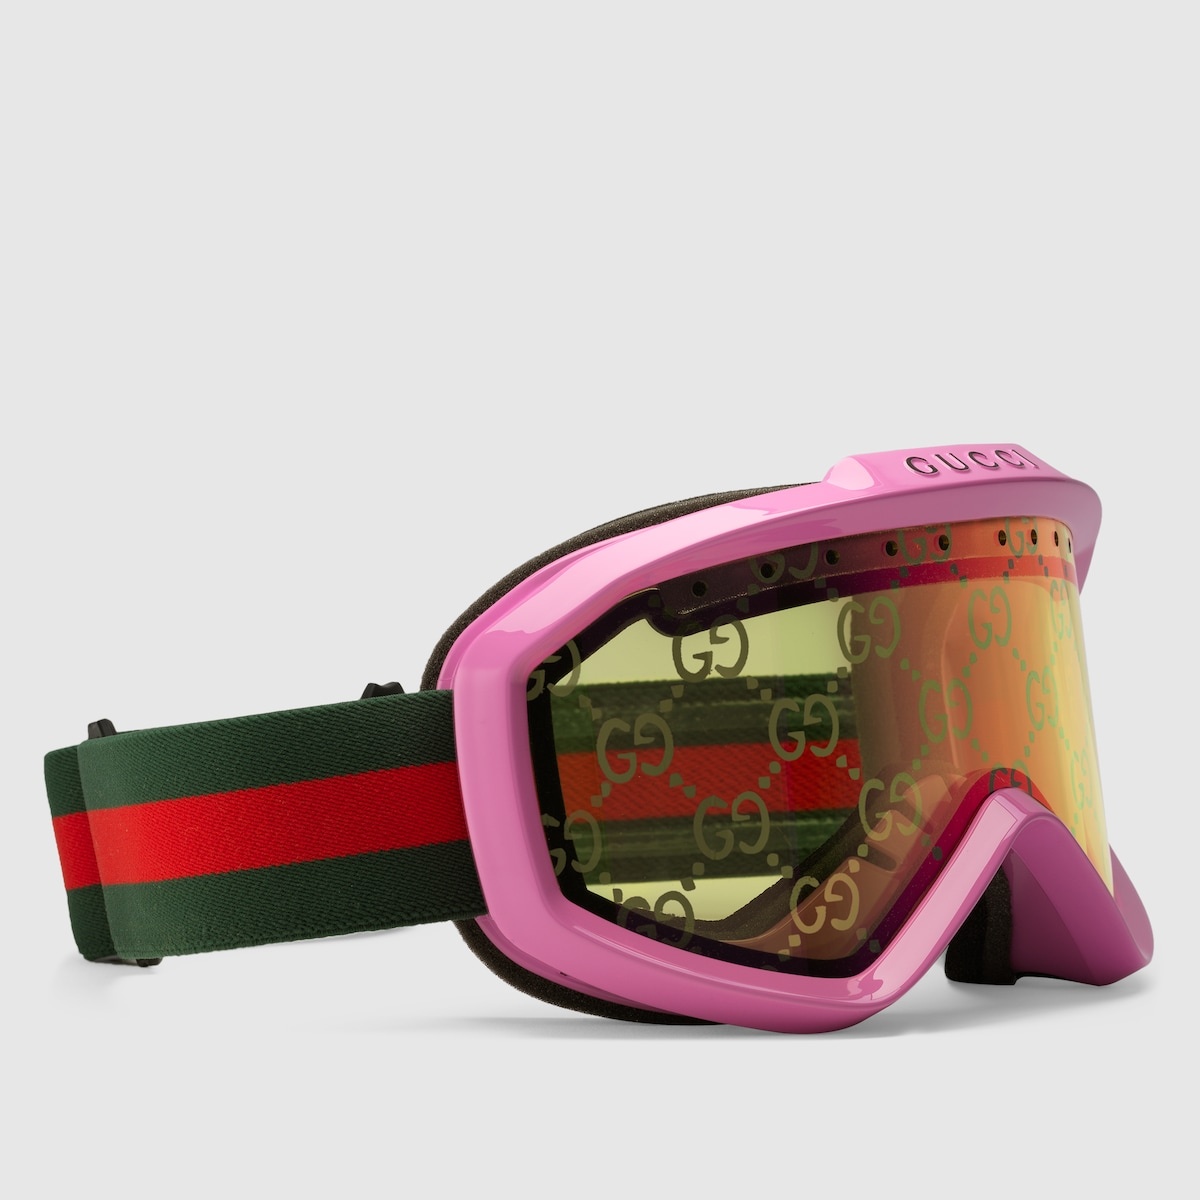 GUCCI Gucci ski goggles